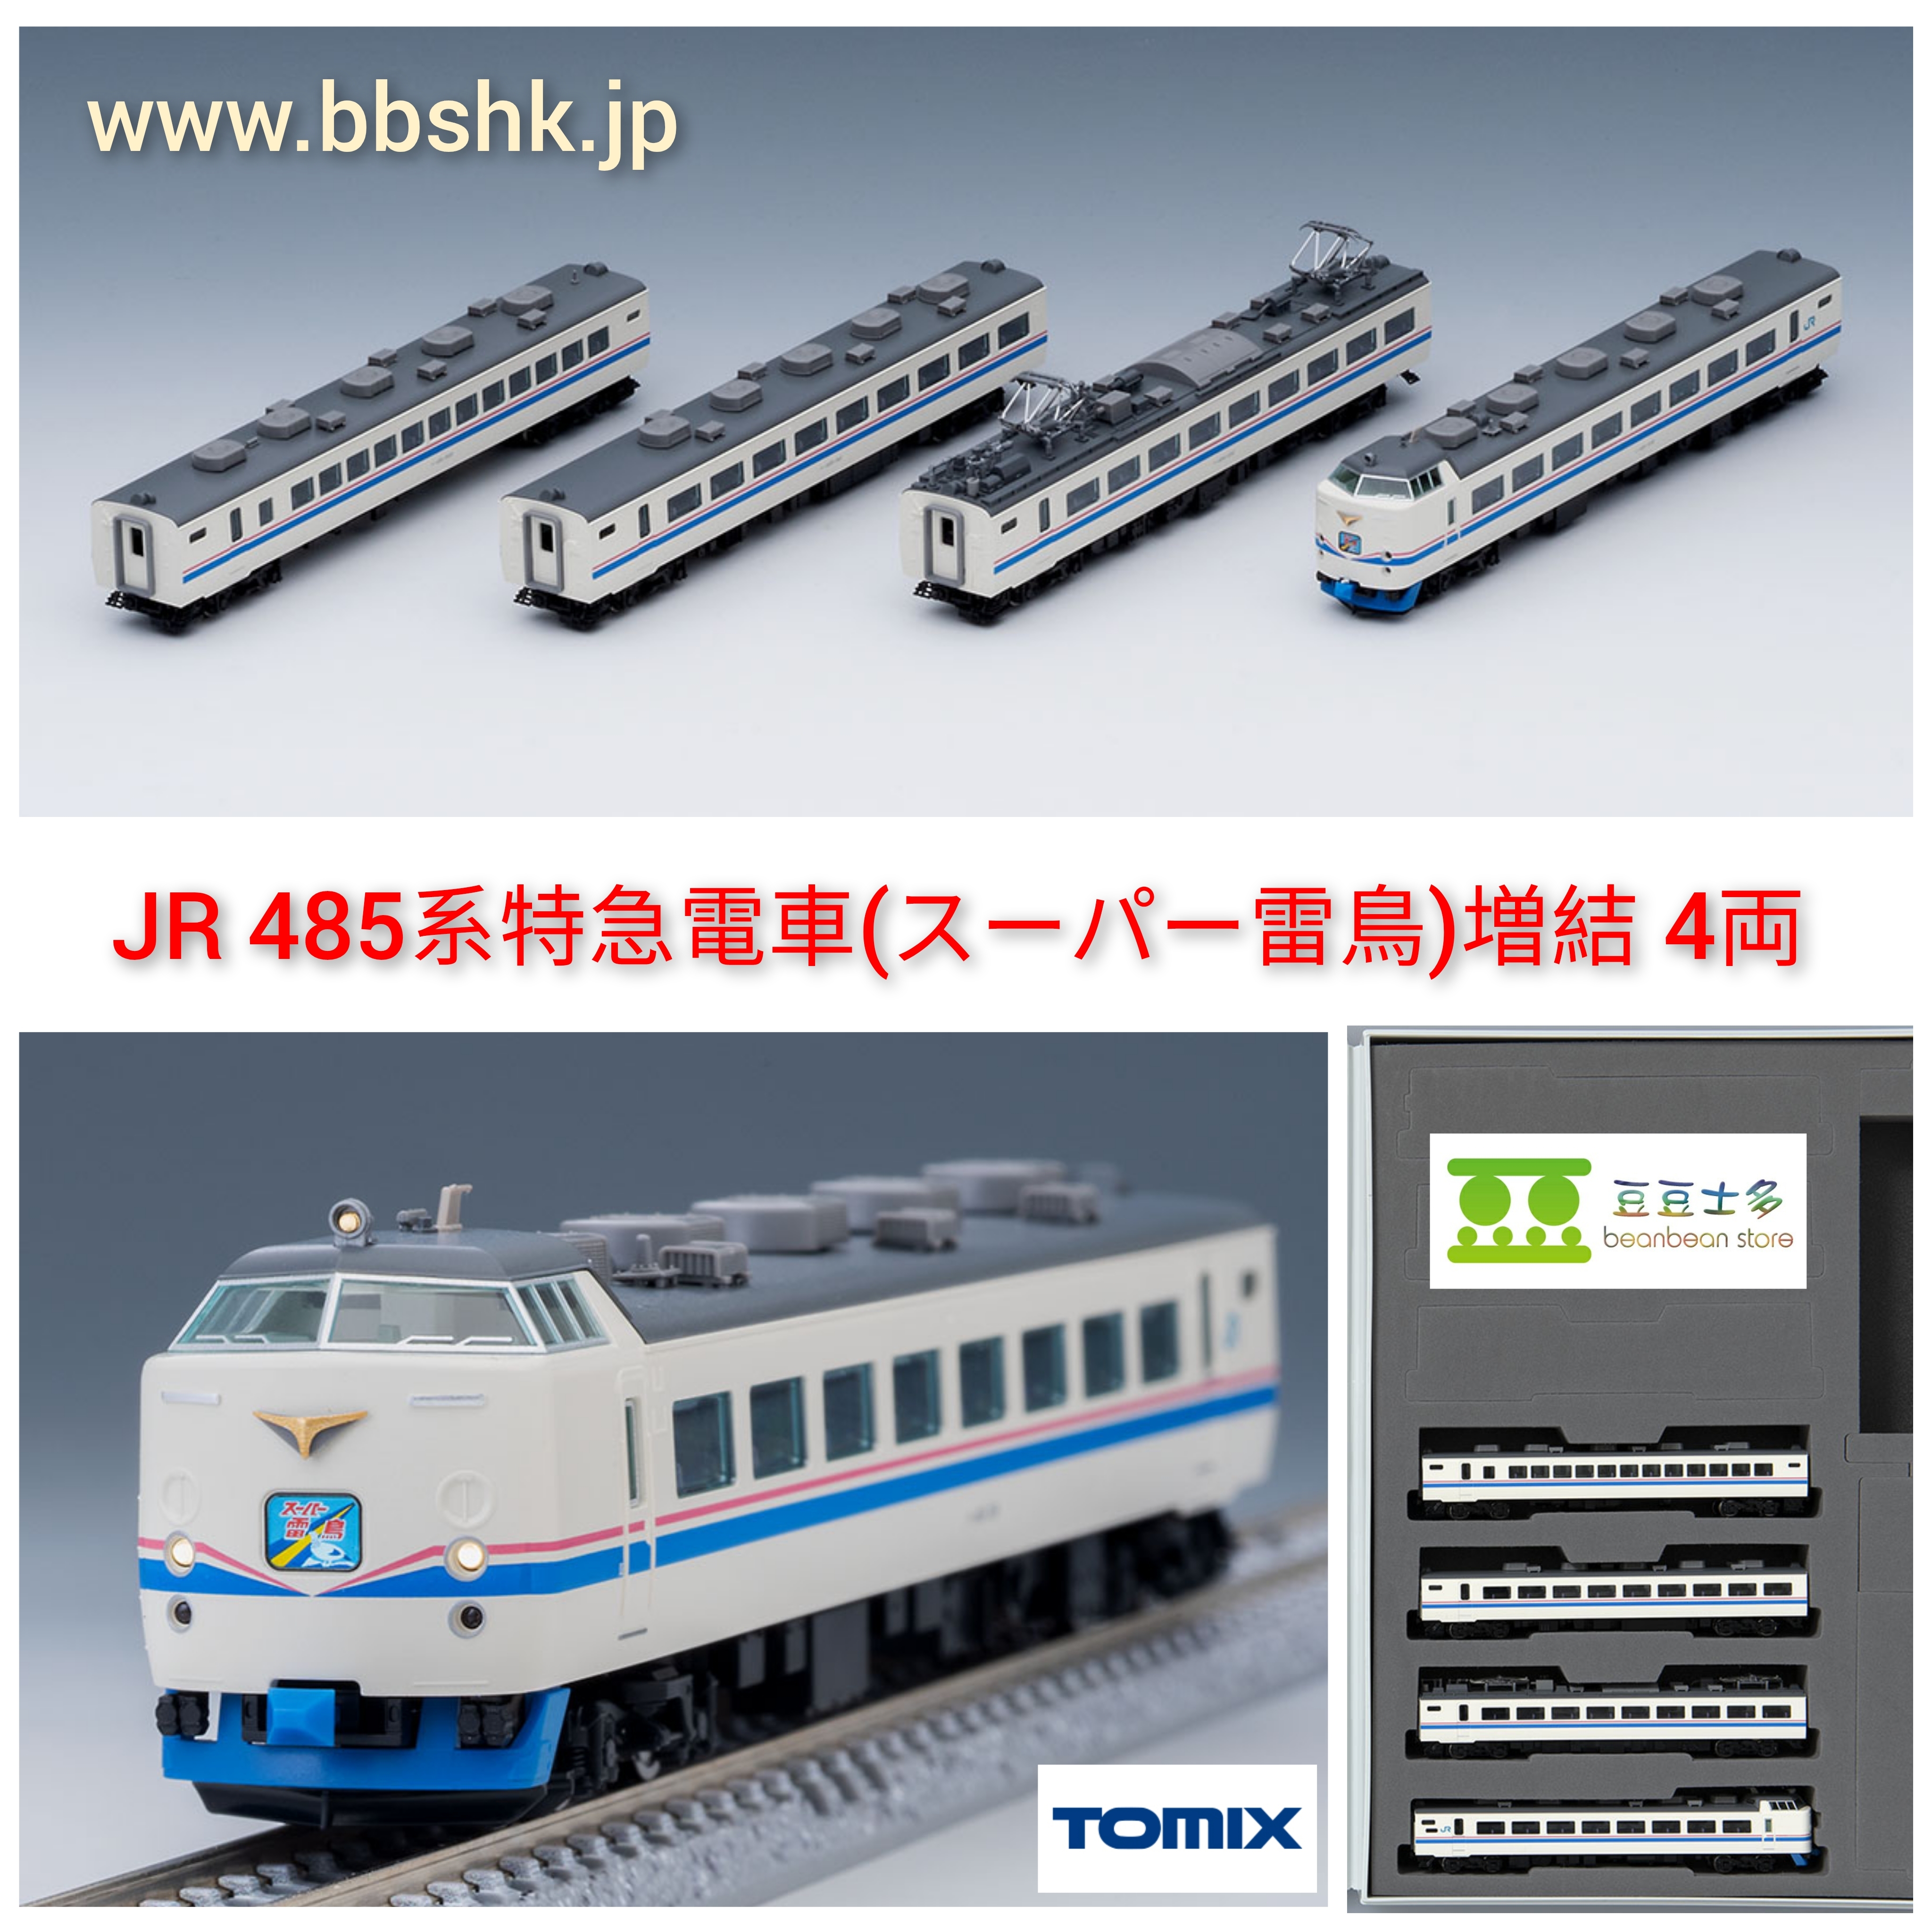 TOMIX 98752 JR 485系特急電車(スーパー雷鳥) (増結・4両)